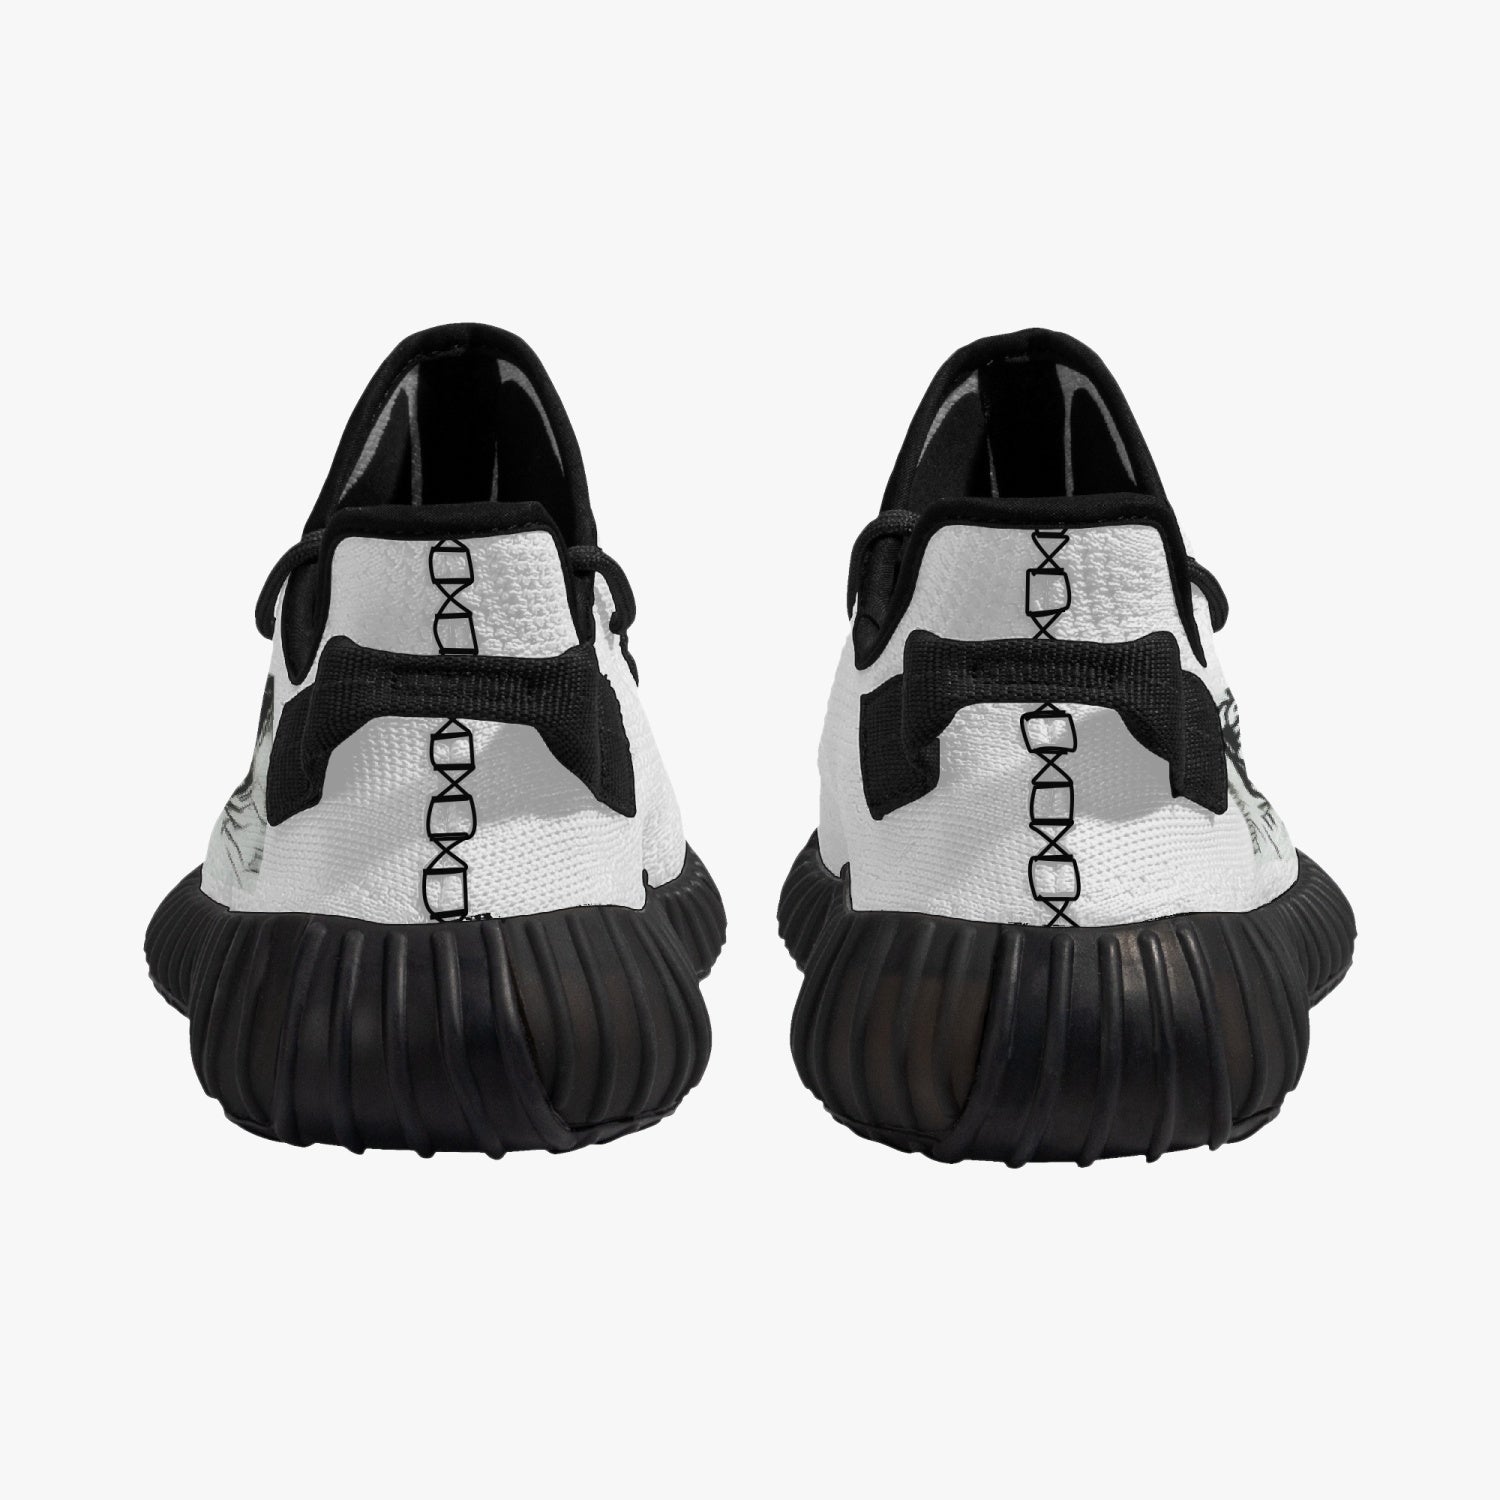 233. Trendy Mesh Knit Sneakers - Black